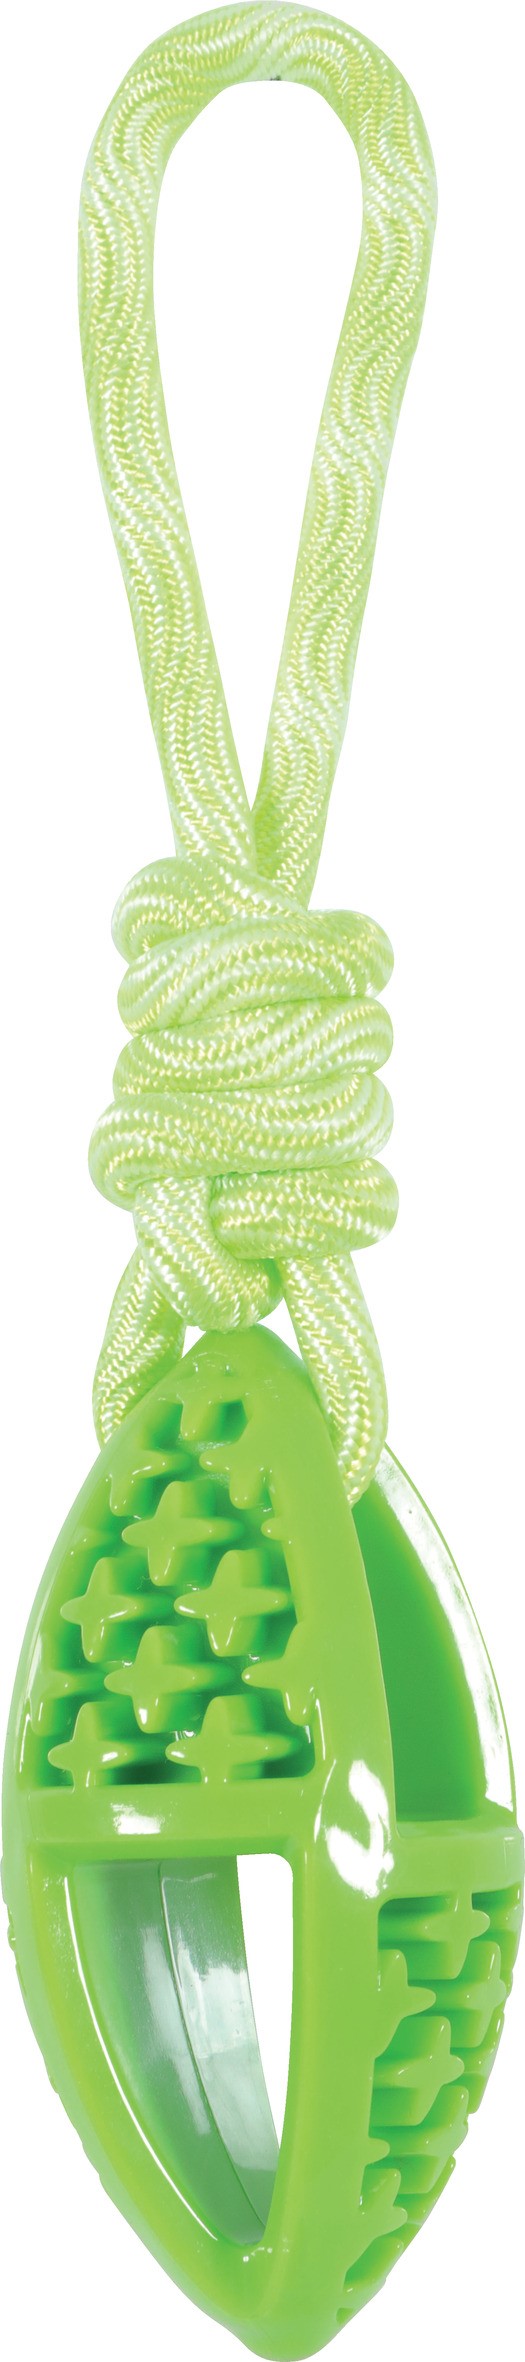 Jouet chien corde Samba - oval - 28cm - vert